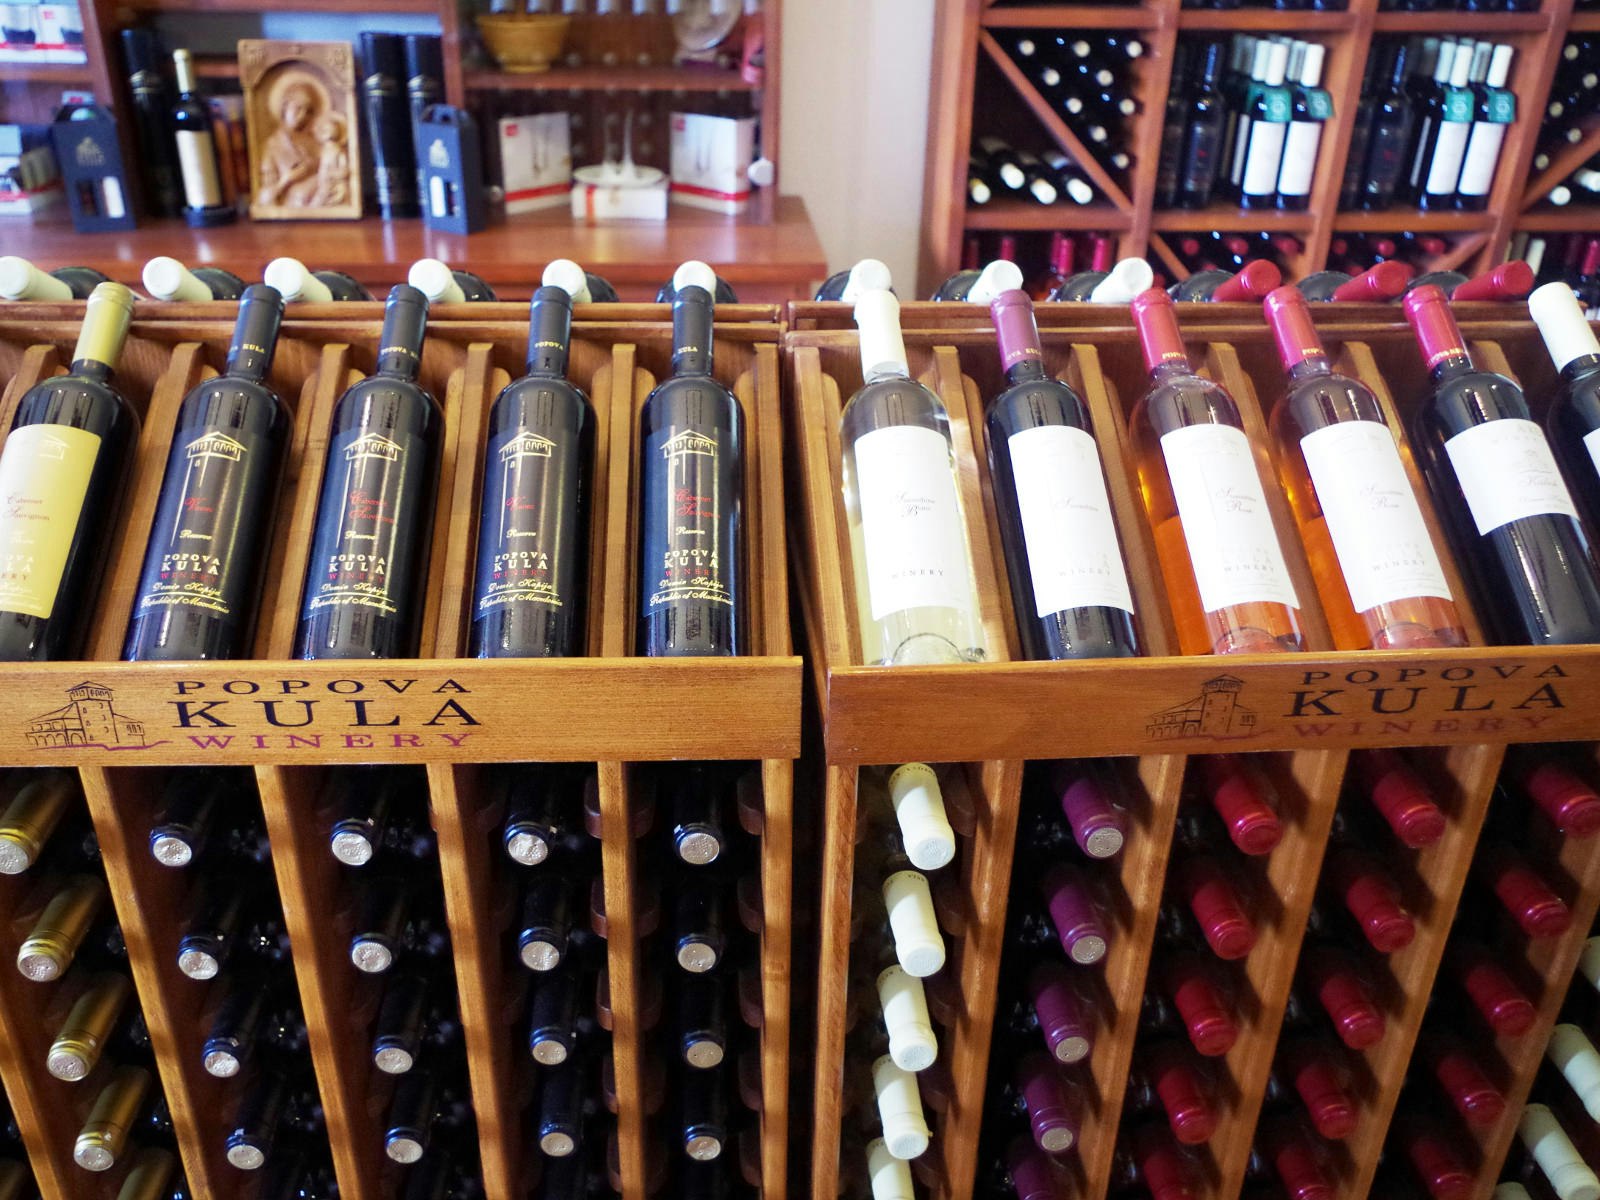 Wine bottles at the Popova Kula winery shop © Cibrev / CC BY-SA 4.0